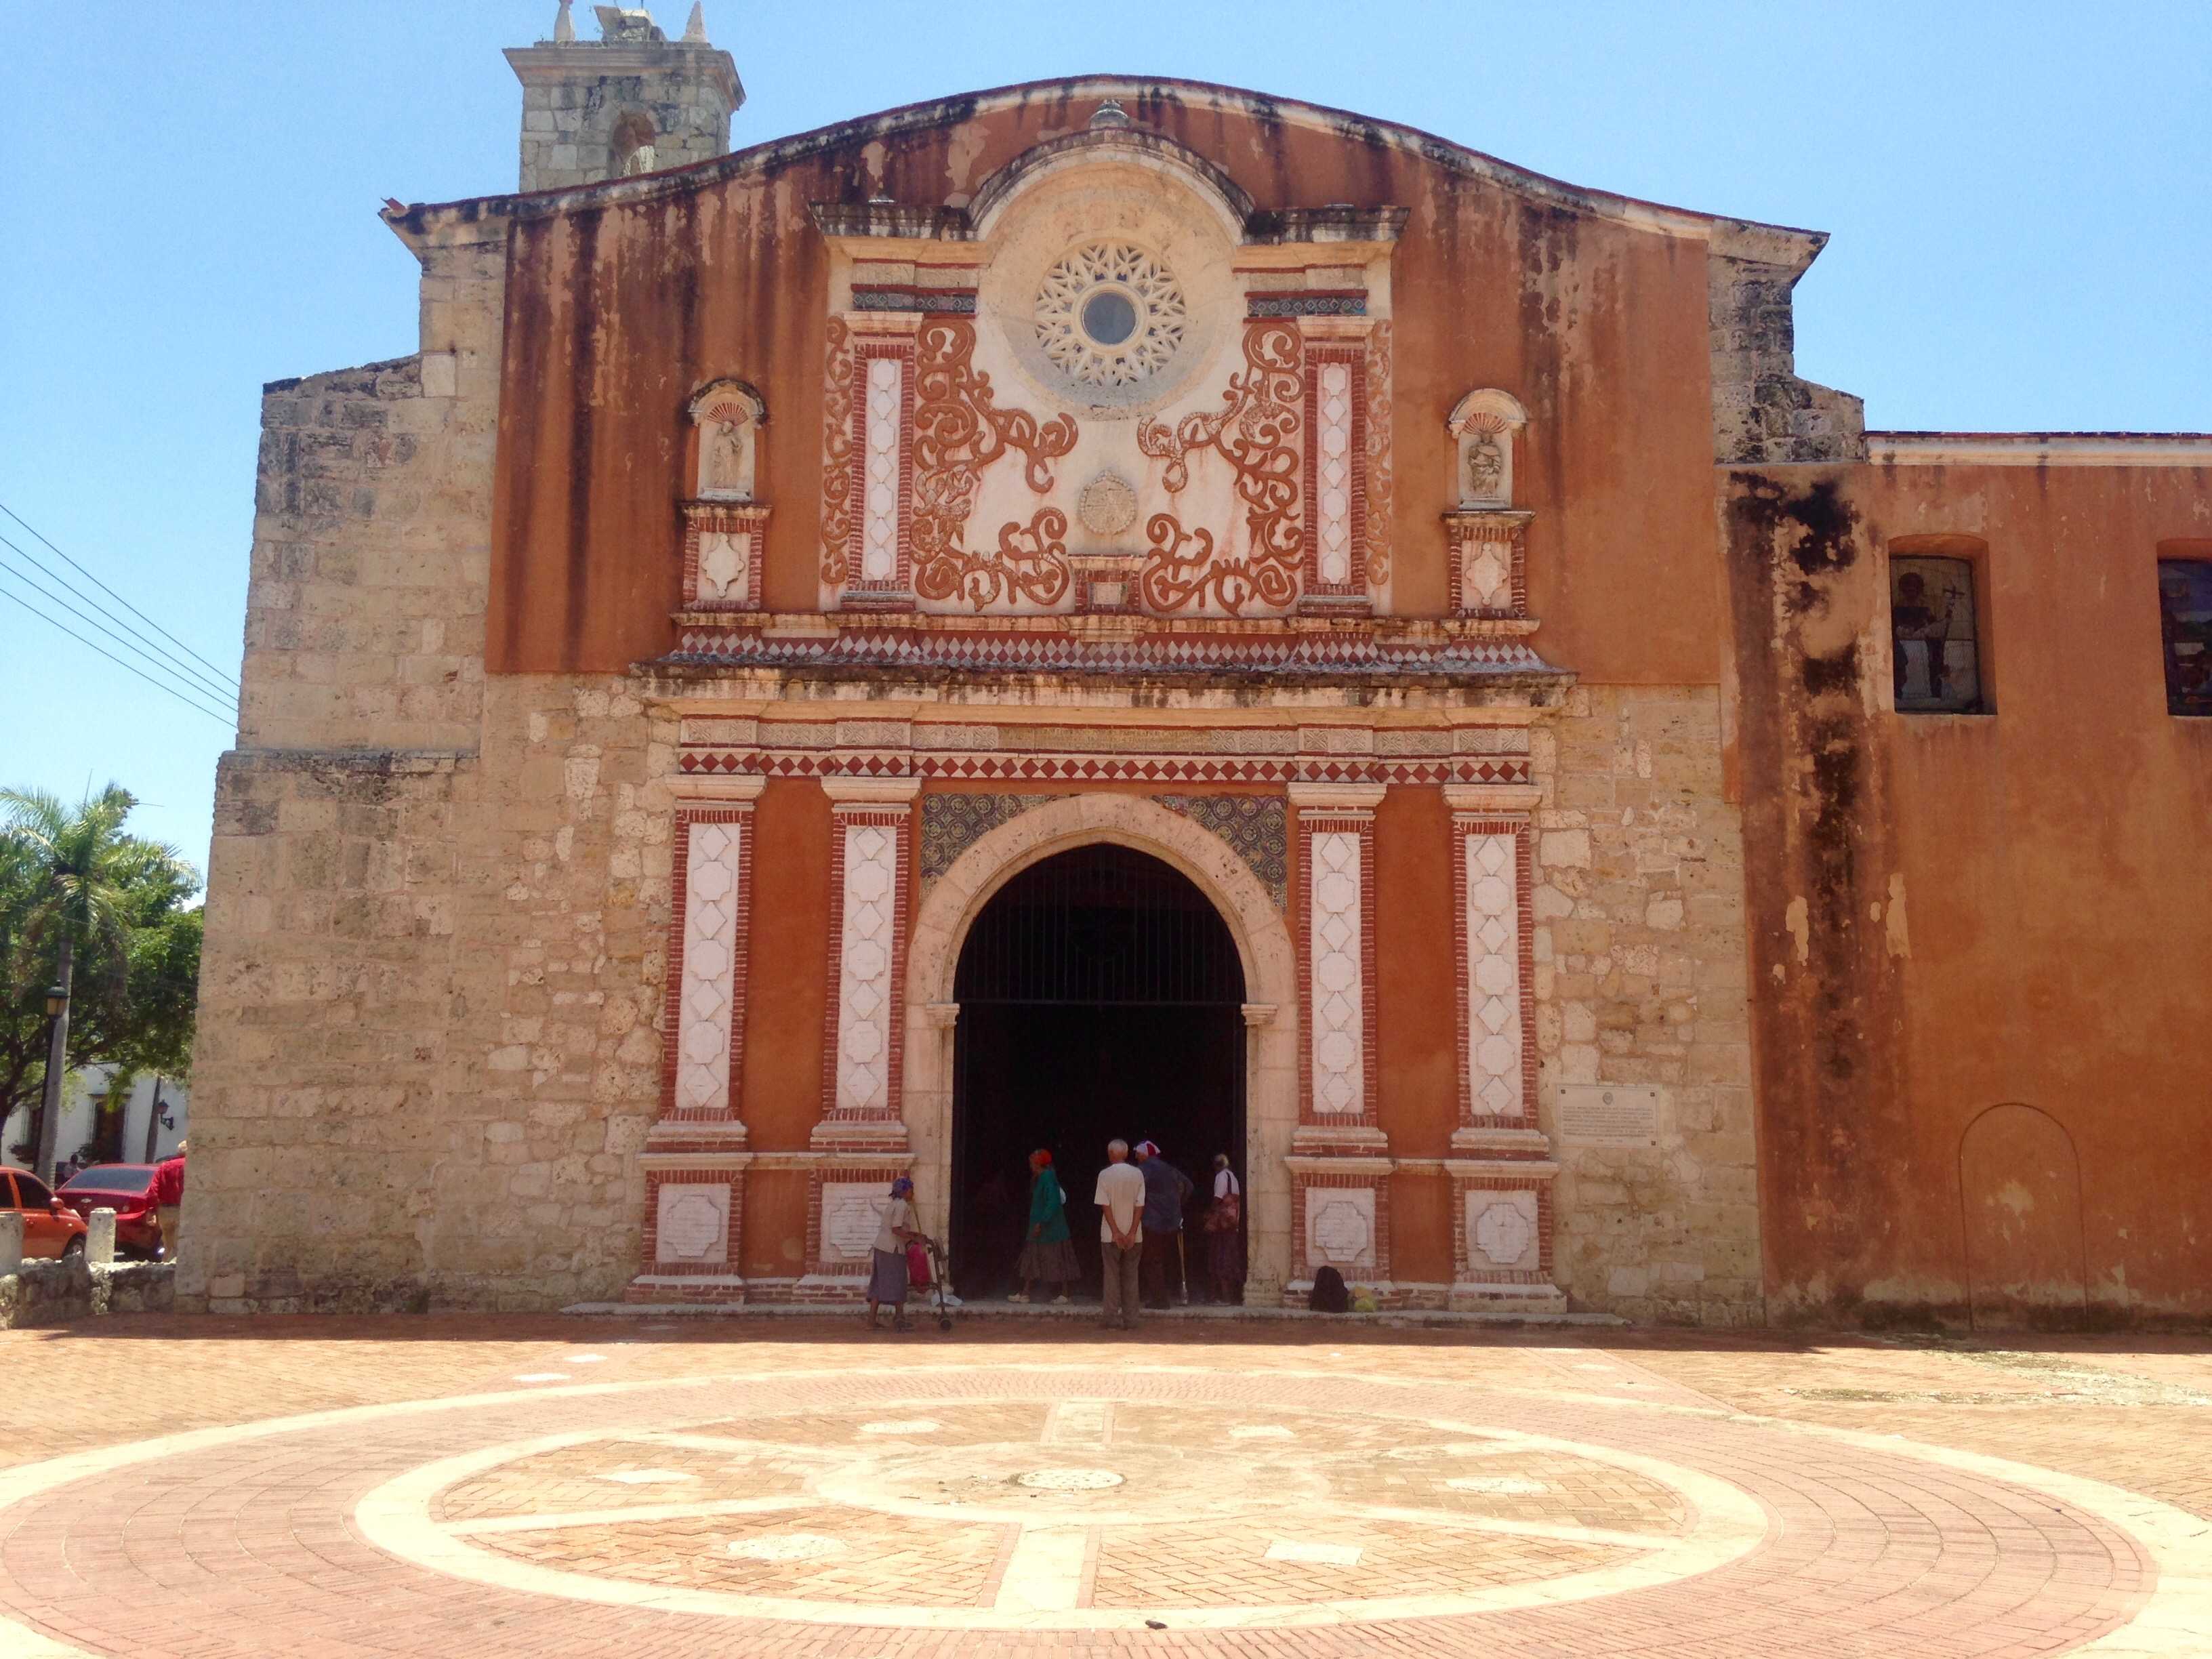 Convento de los Dominicos in Santo Domingo